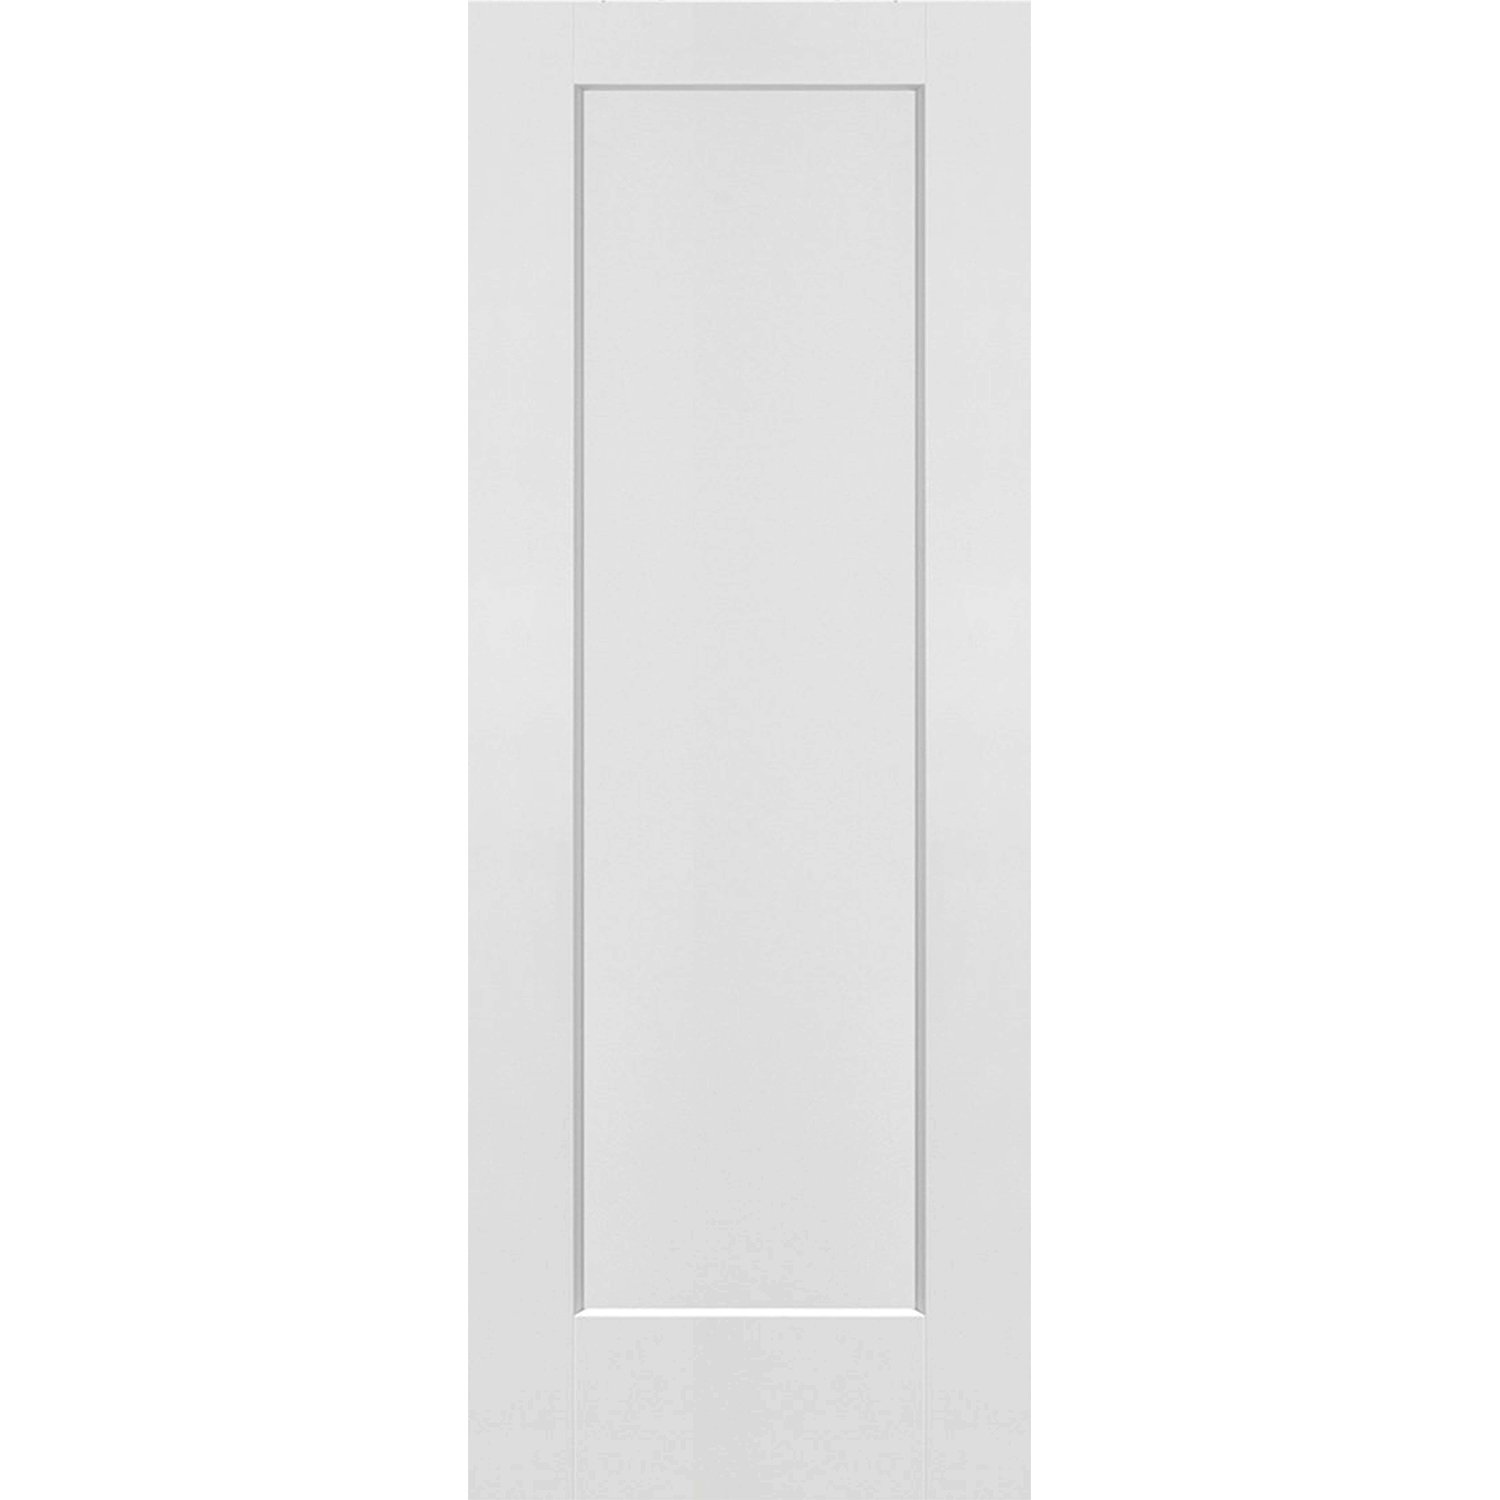 1 Panel Solid Door - 30 x 80